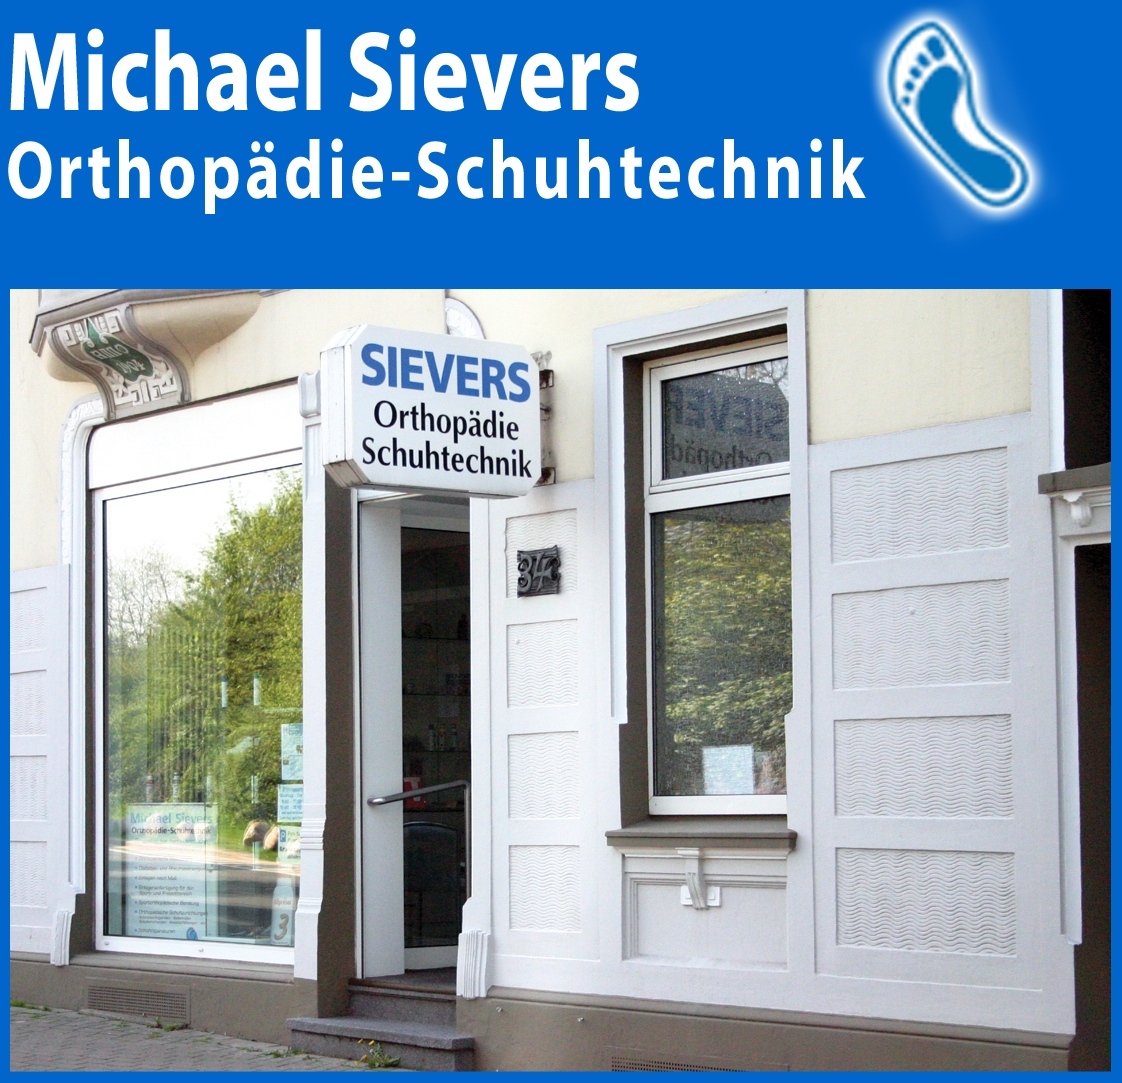 www.sievers-orthopaedie.de